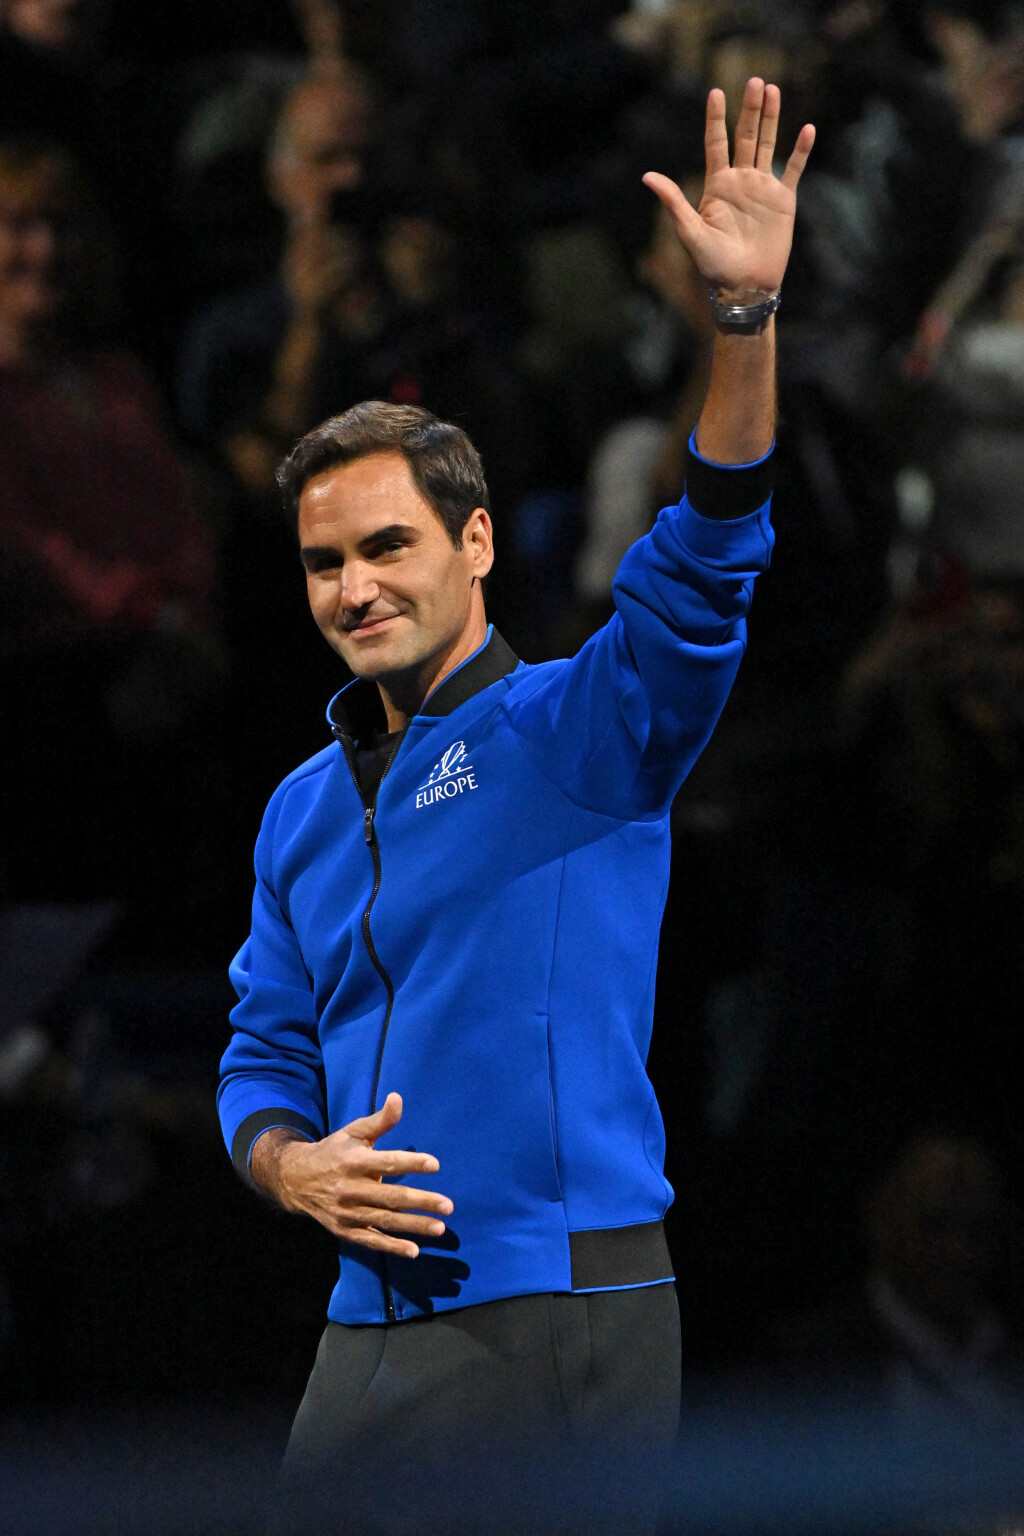 Roger Federer službeno se oprostio od tenisa